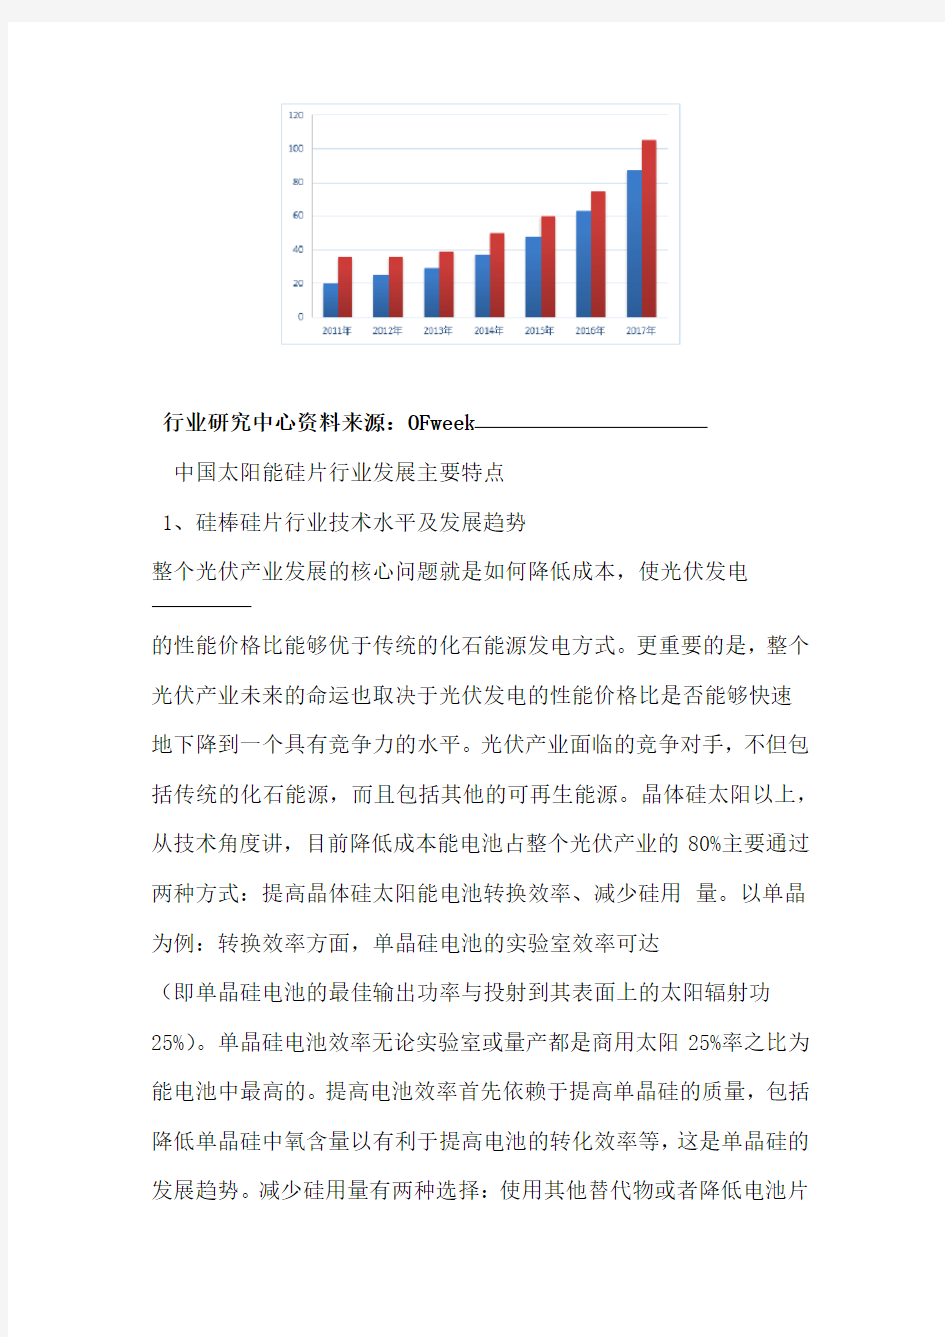 完整版中国太阳能硅片之行业概况